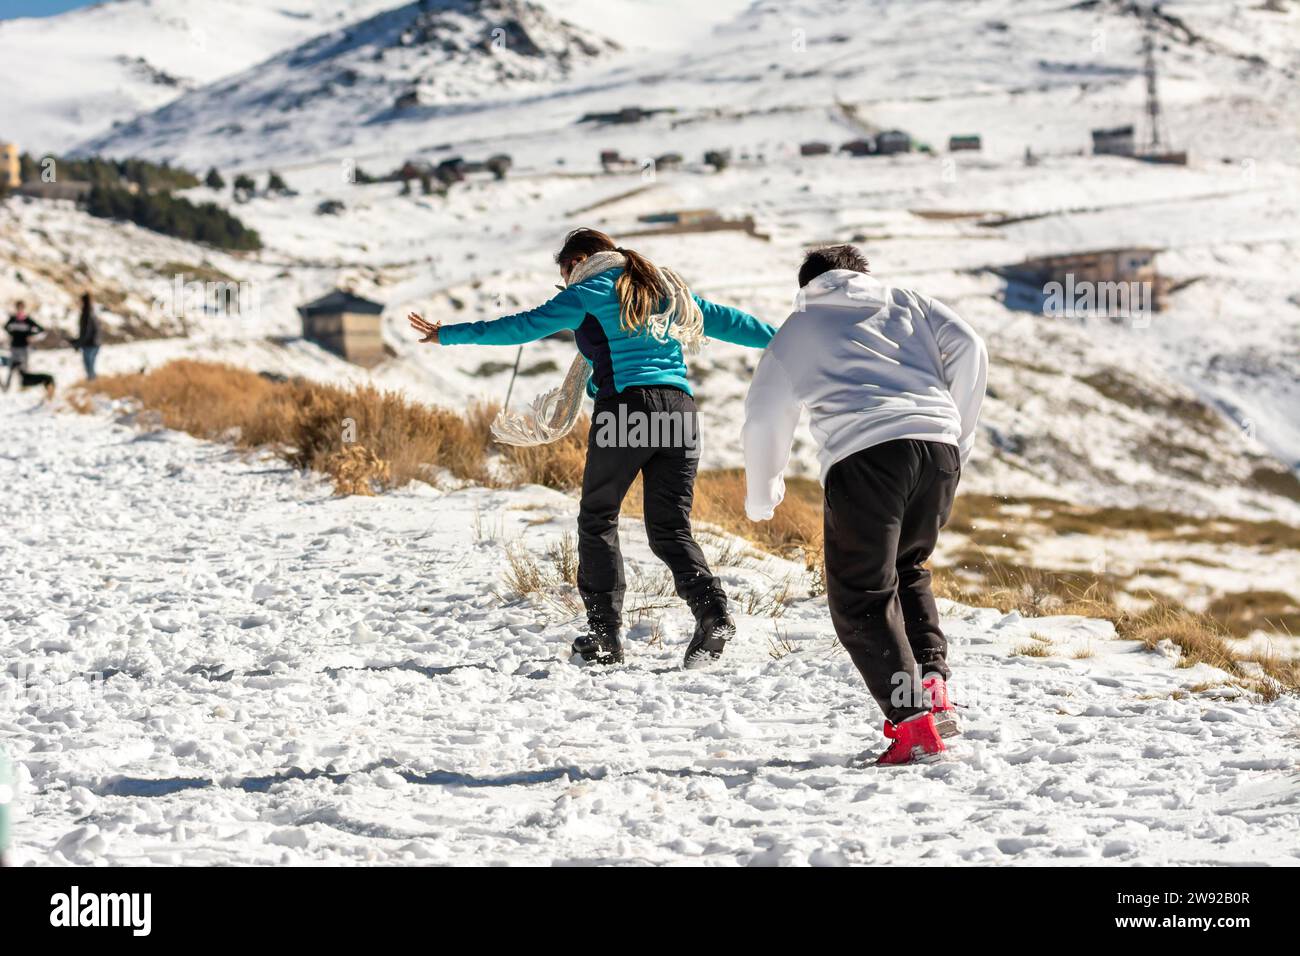 Des aventures glacées vous attendent ! Une famille latino se délecte dans les collines enneigées de la Sierra Nevada, Grenade, se livrant au plaisir glacial Banque D'Images